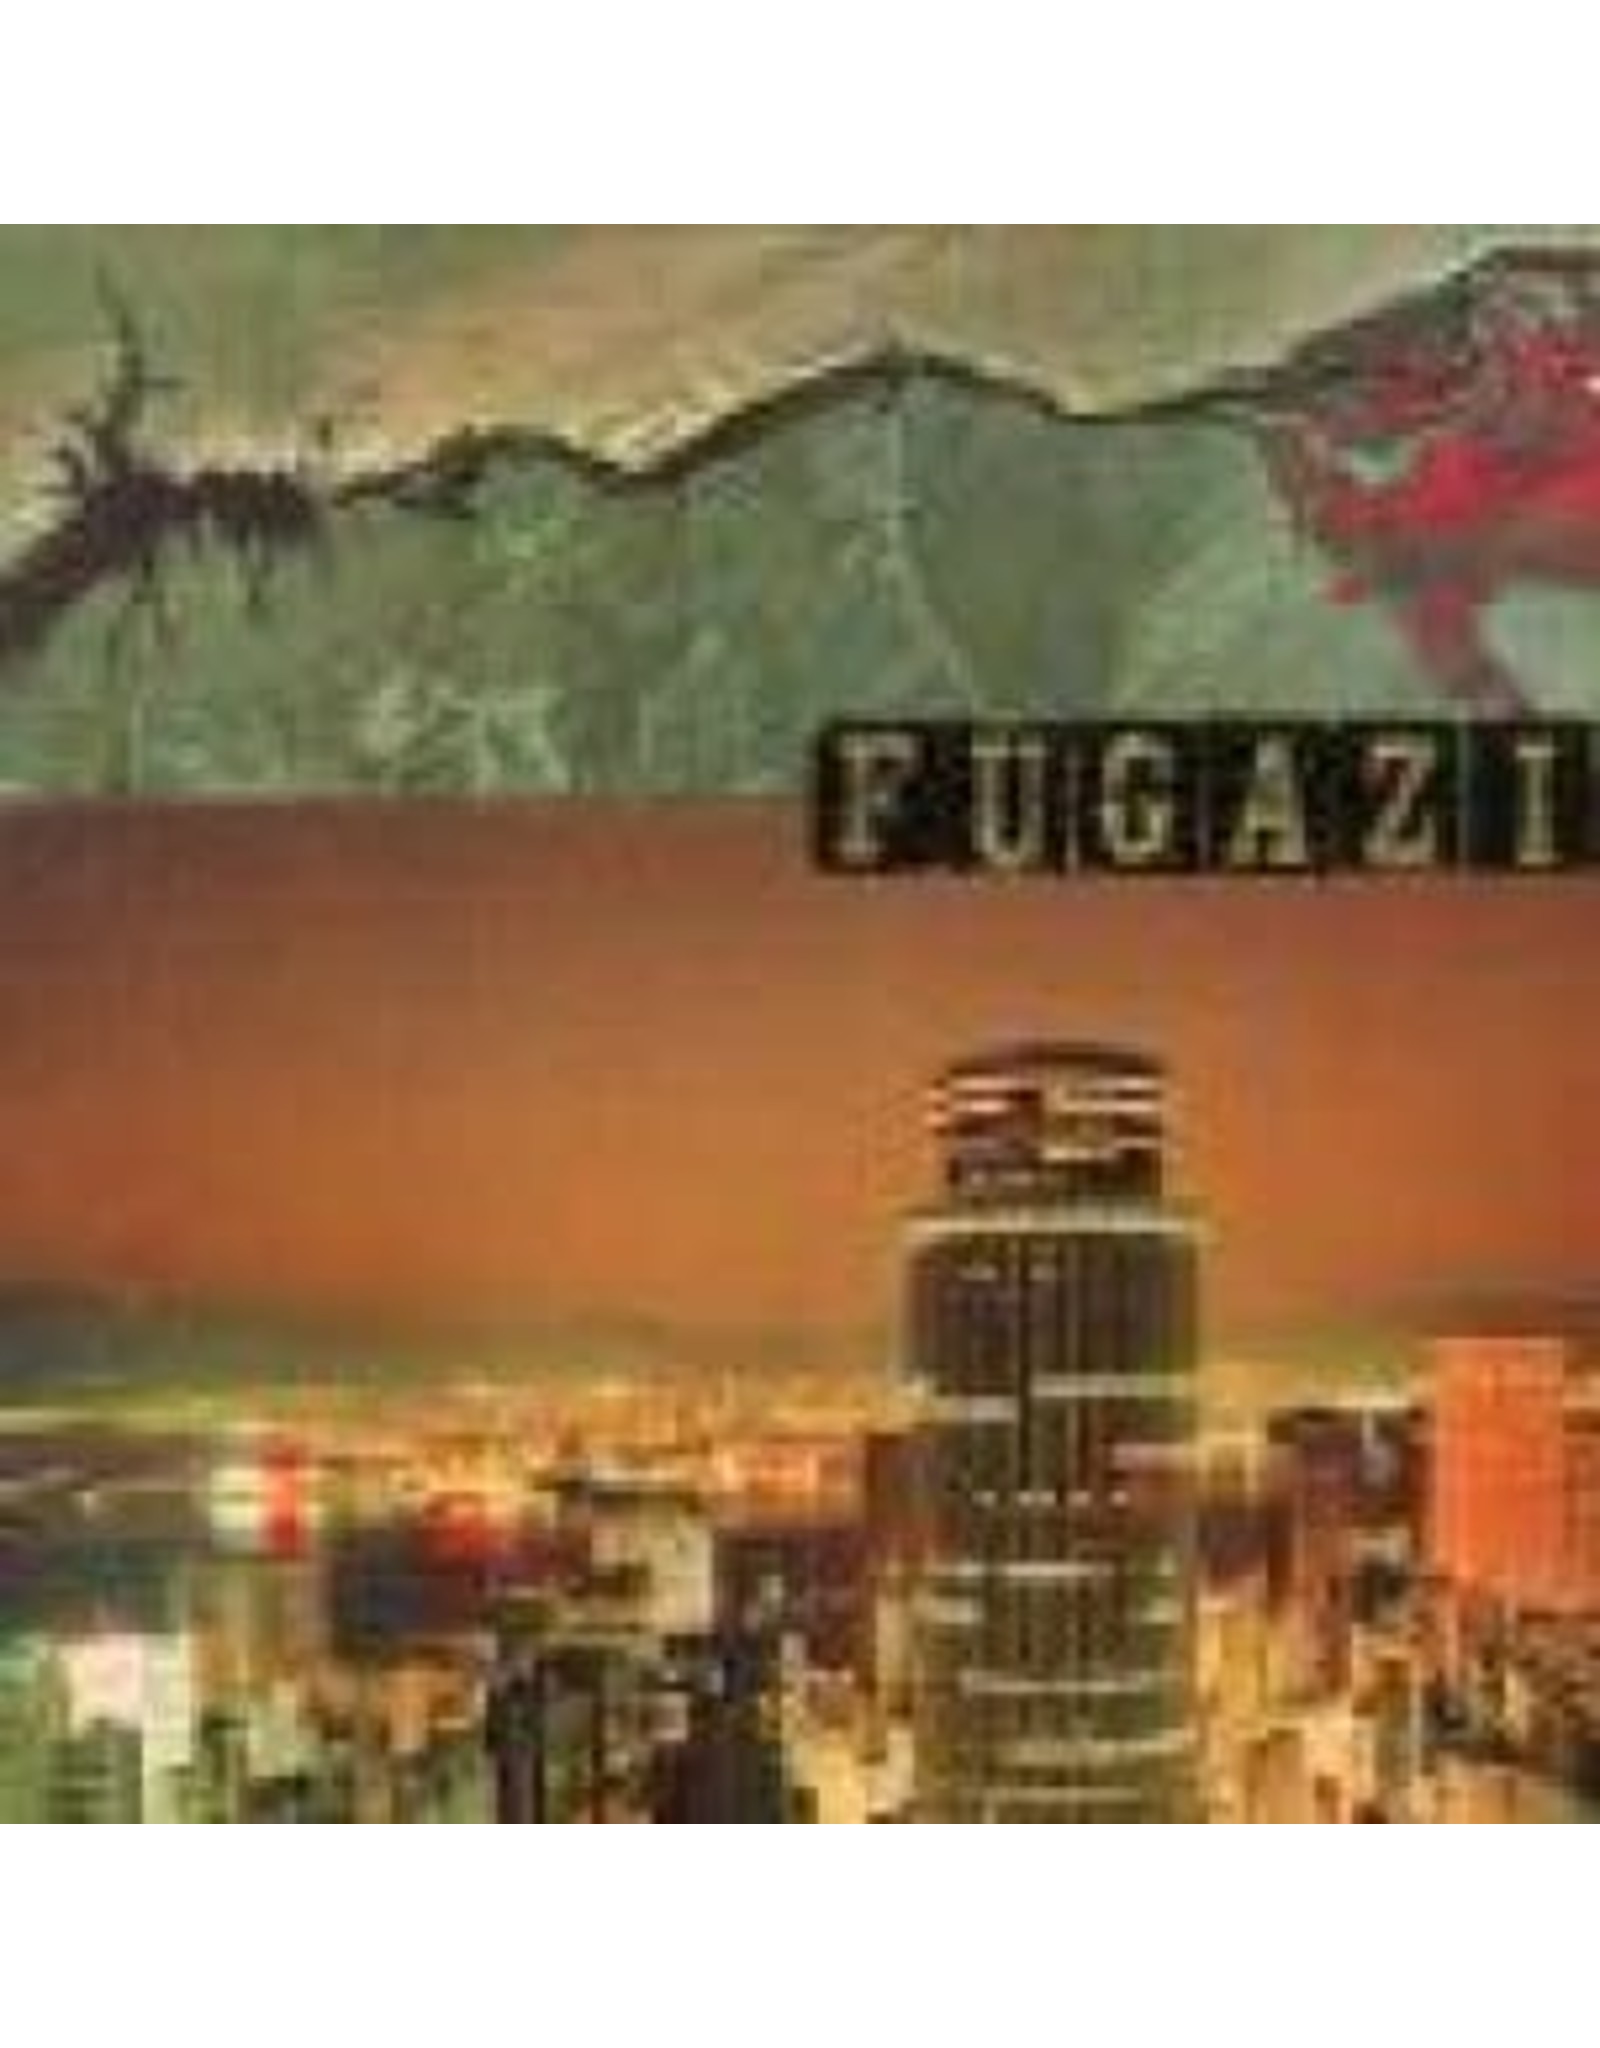 Dischord Fugazi: End Hits LP